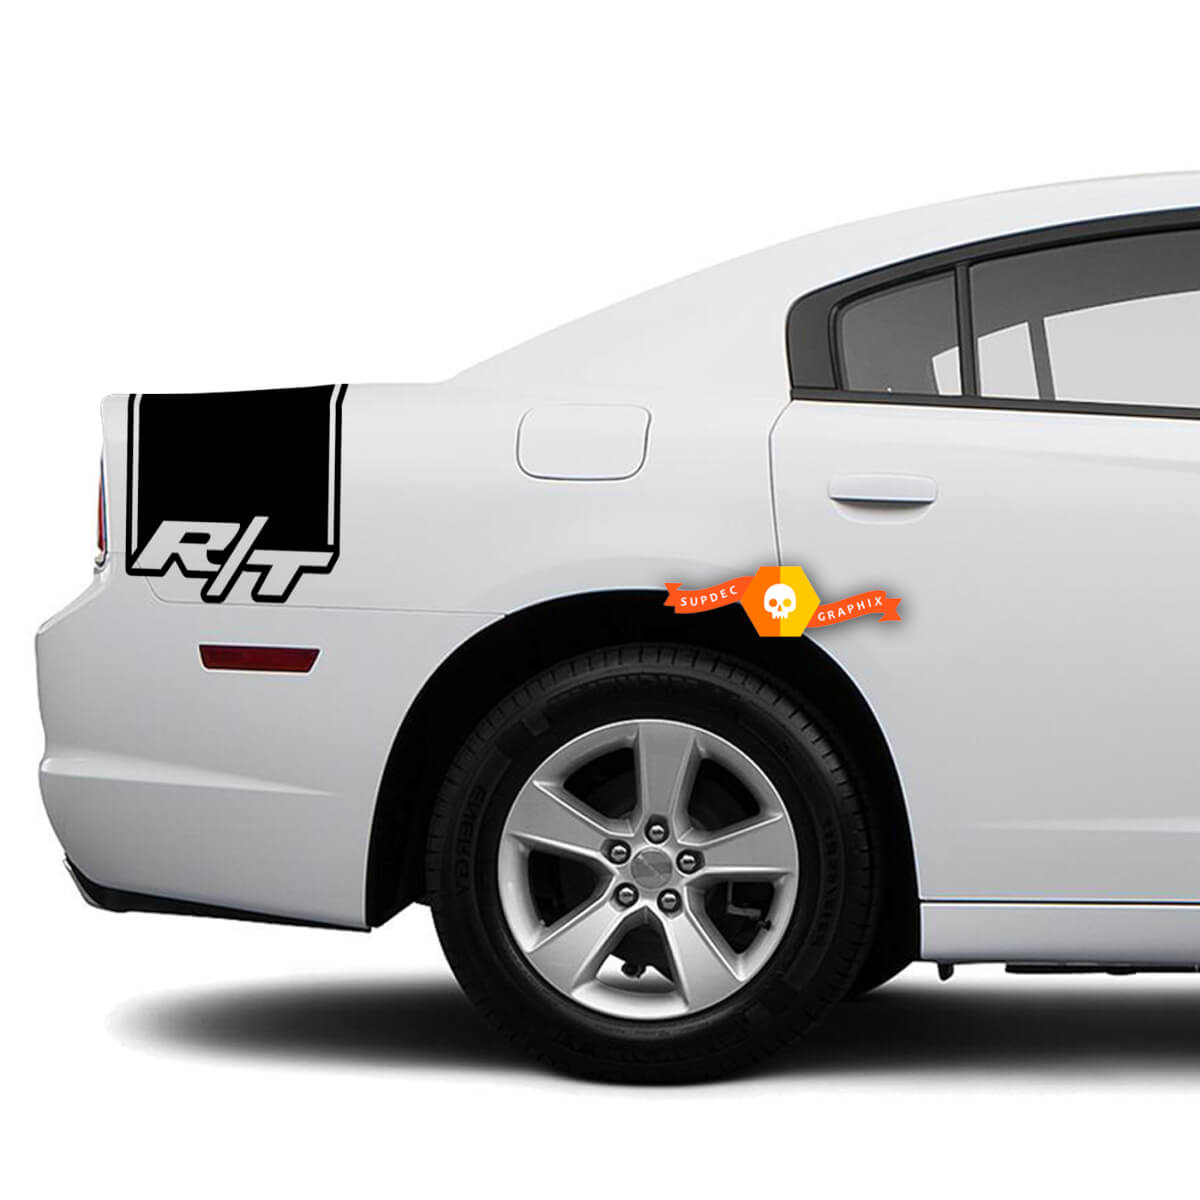 Dodge Charger Rückseite Band Aufkleber Aufkleber Hemi R / T Grafik passt zu Modellen 2011-2014